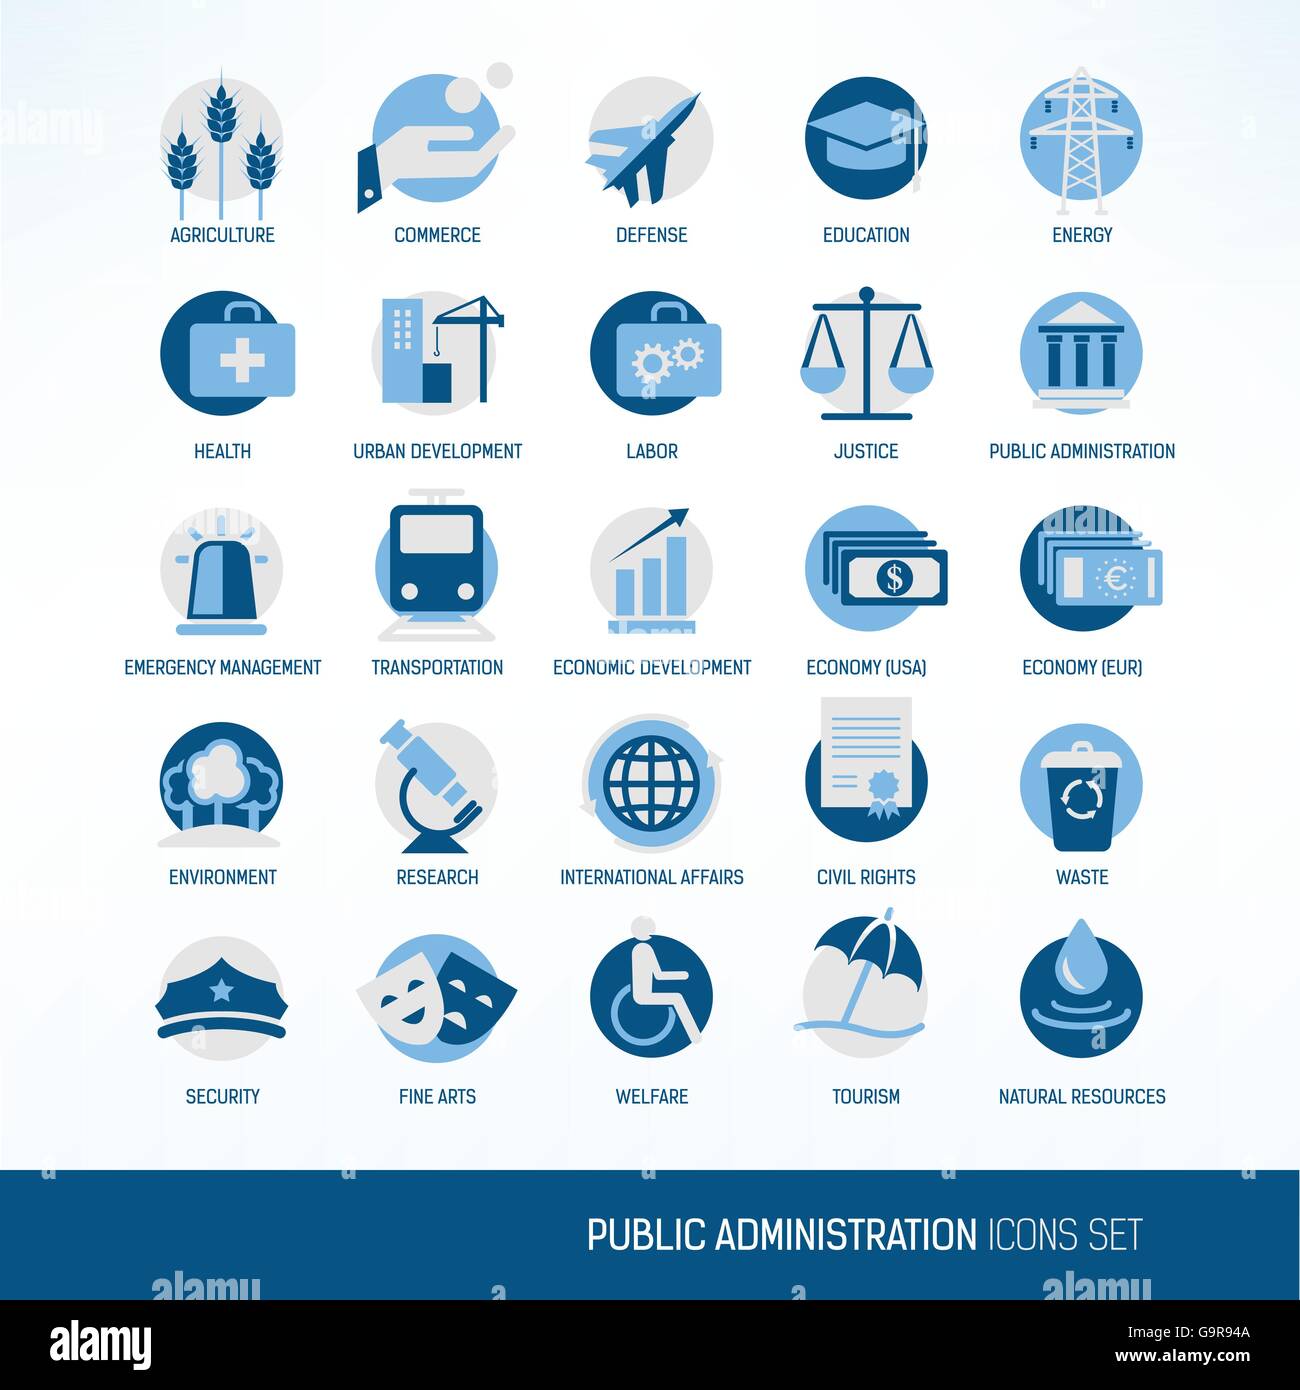 Le gouvernement et l'administration publique les ministères vector icons set Illustration de Vecteur